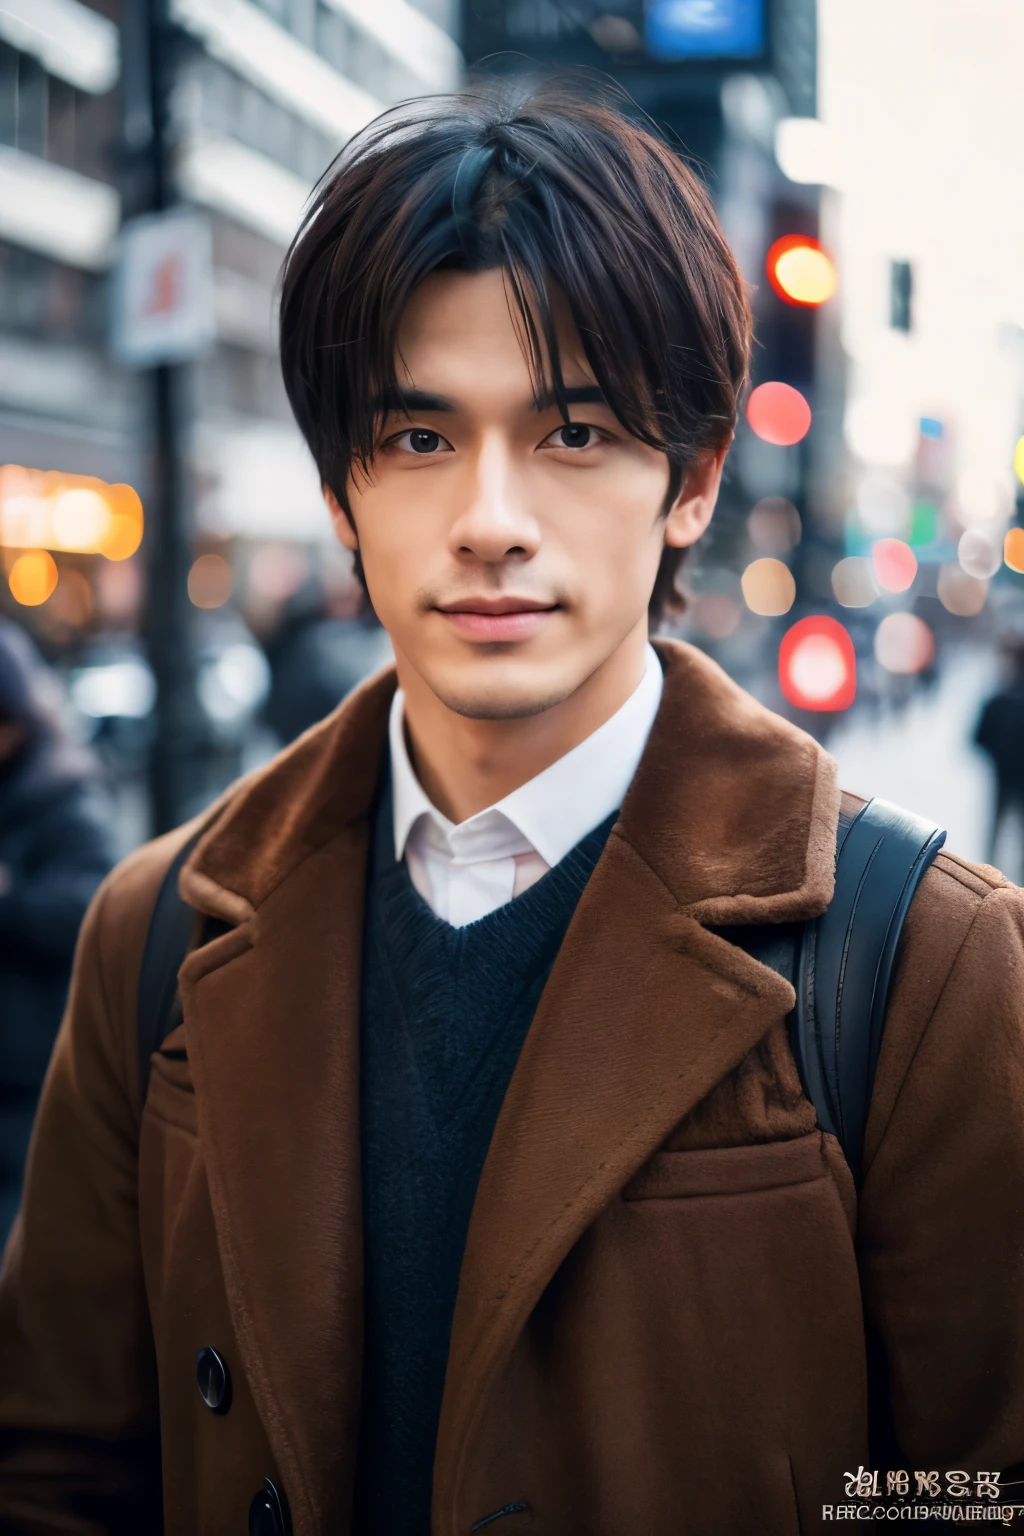 Fotorrealista, Retrato de cuerpo completo en 8K, un guapo, un hombre de 25 años, Una expresión encantadora, detalles detallados de la cara, TOKIOcty, inviernos, Shibuya al fondo